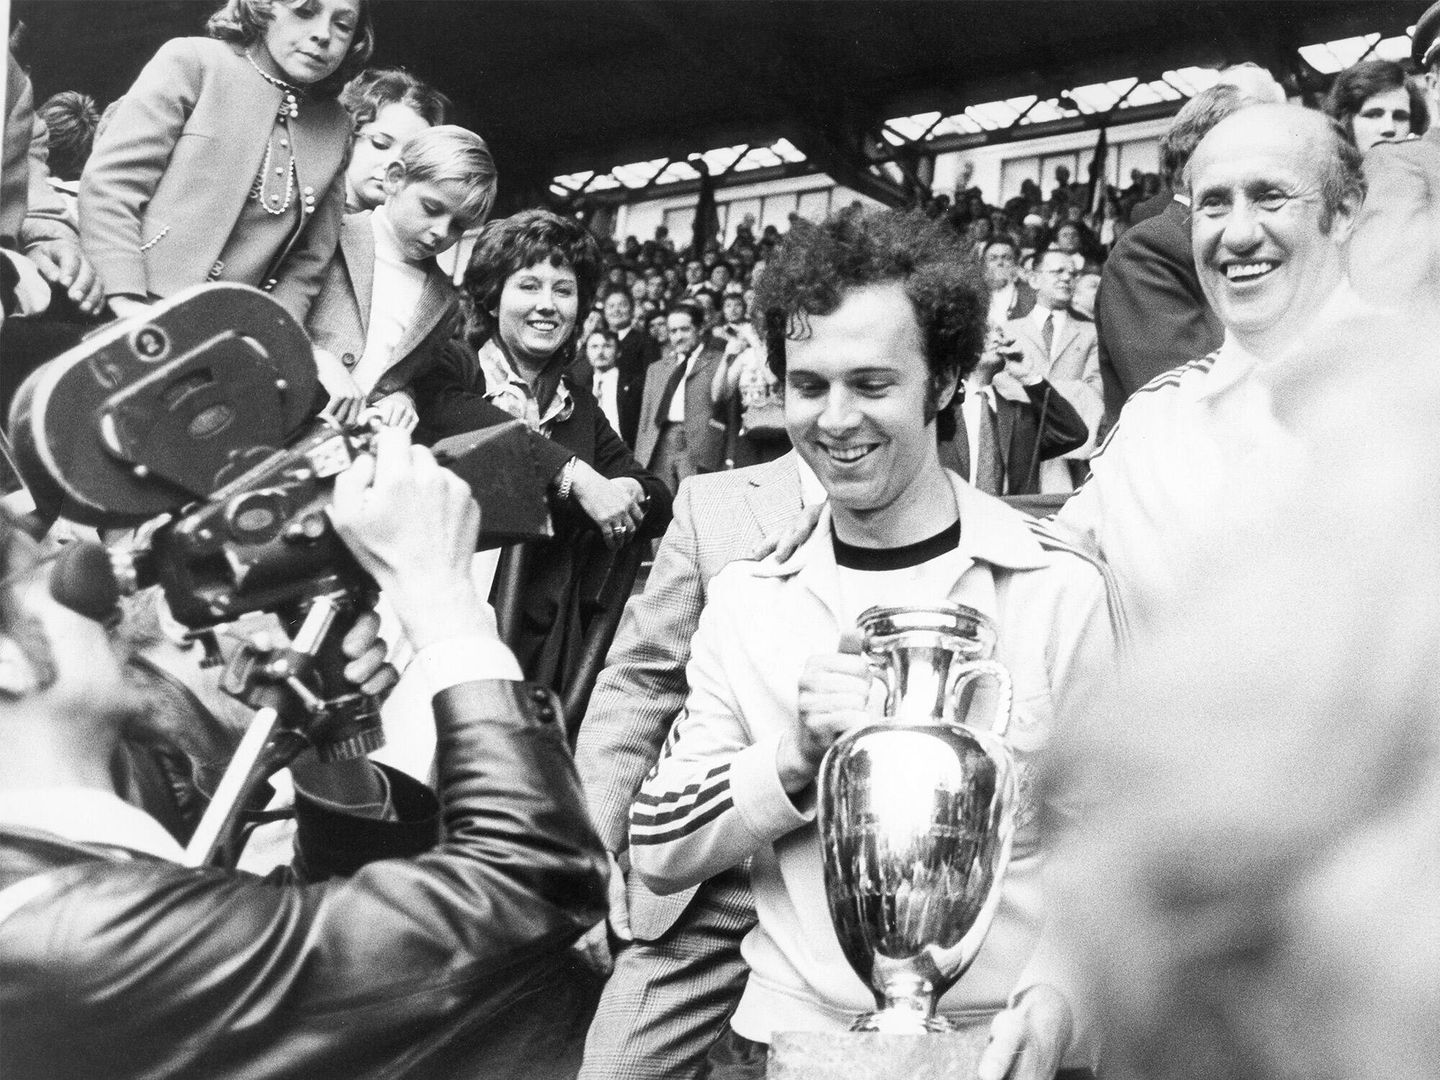 El capitán del equipo alemán, Franz Beckenbauer, con la copa tras ganar el Campeonato de Europa de Fútbol de la UEFA en 1972. (Getty Images/Schirner)